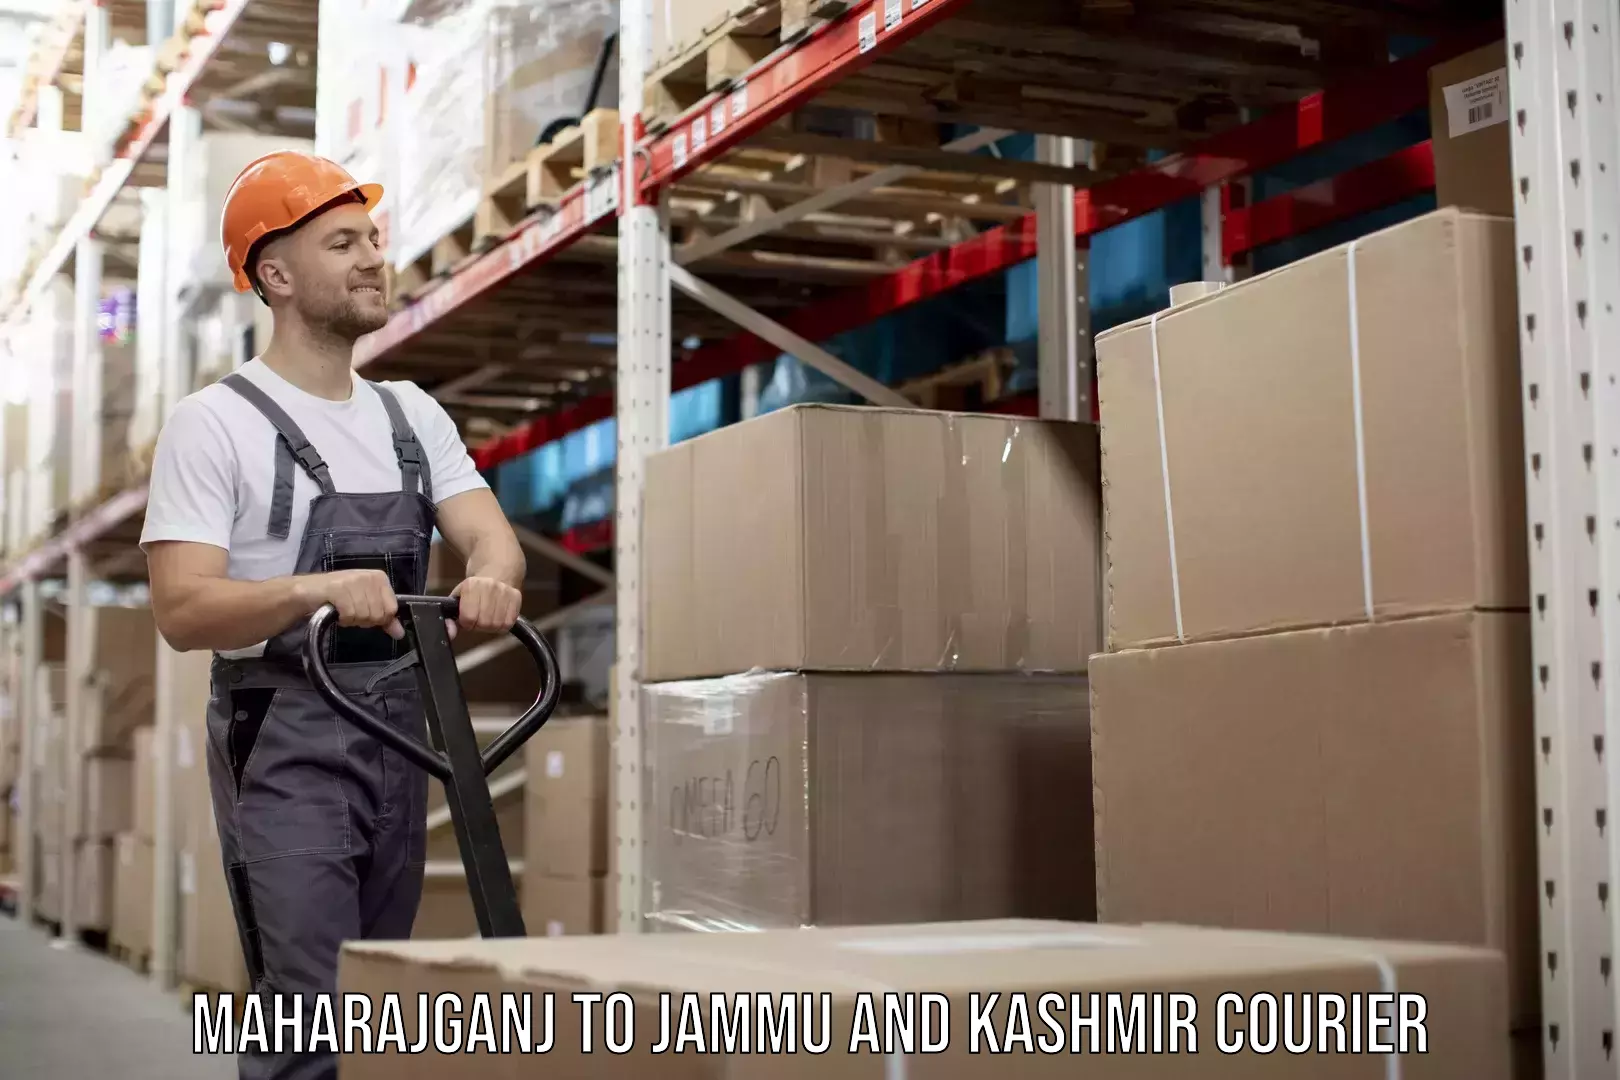 Furniture transport professionals Maharajganj to Jammu and Kashmir